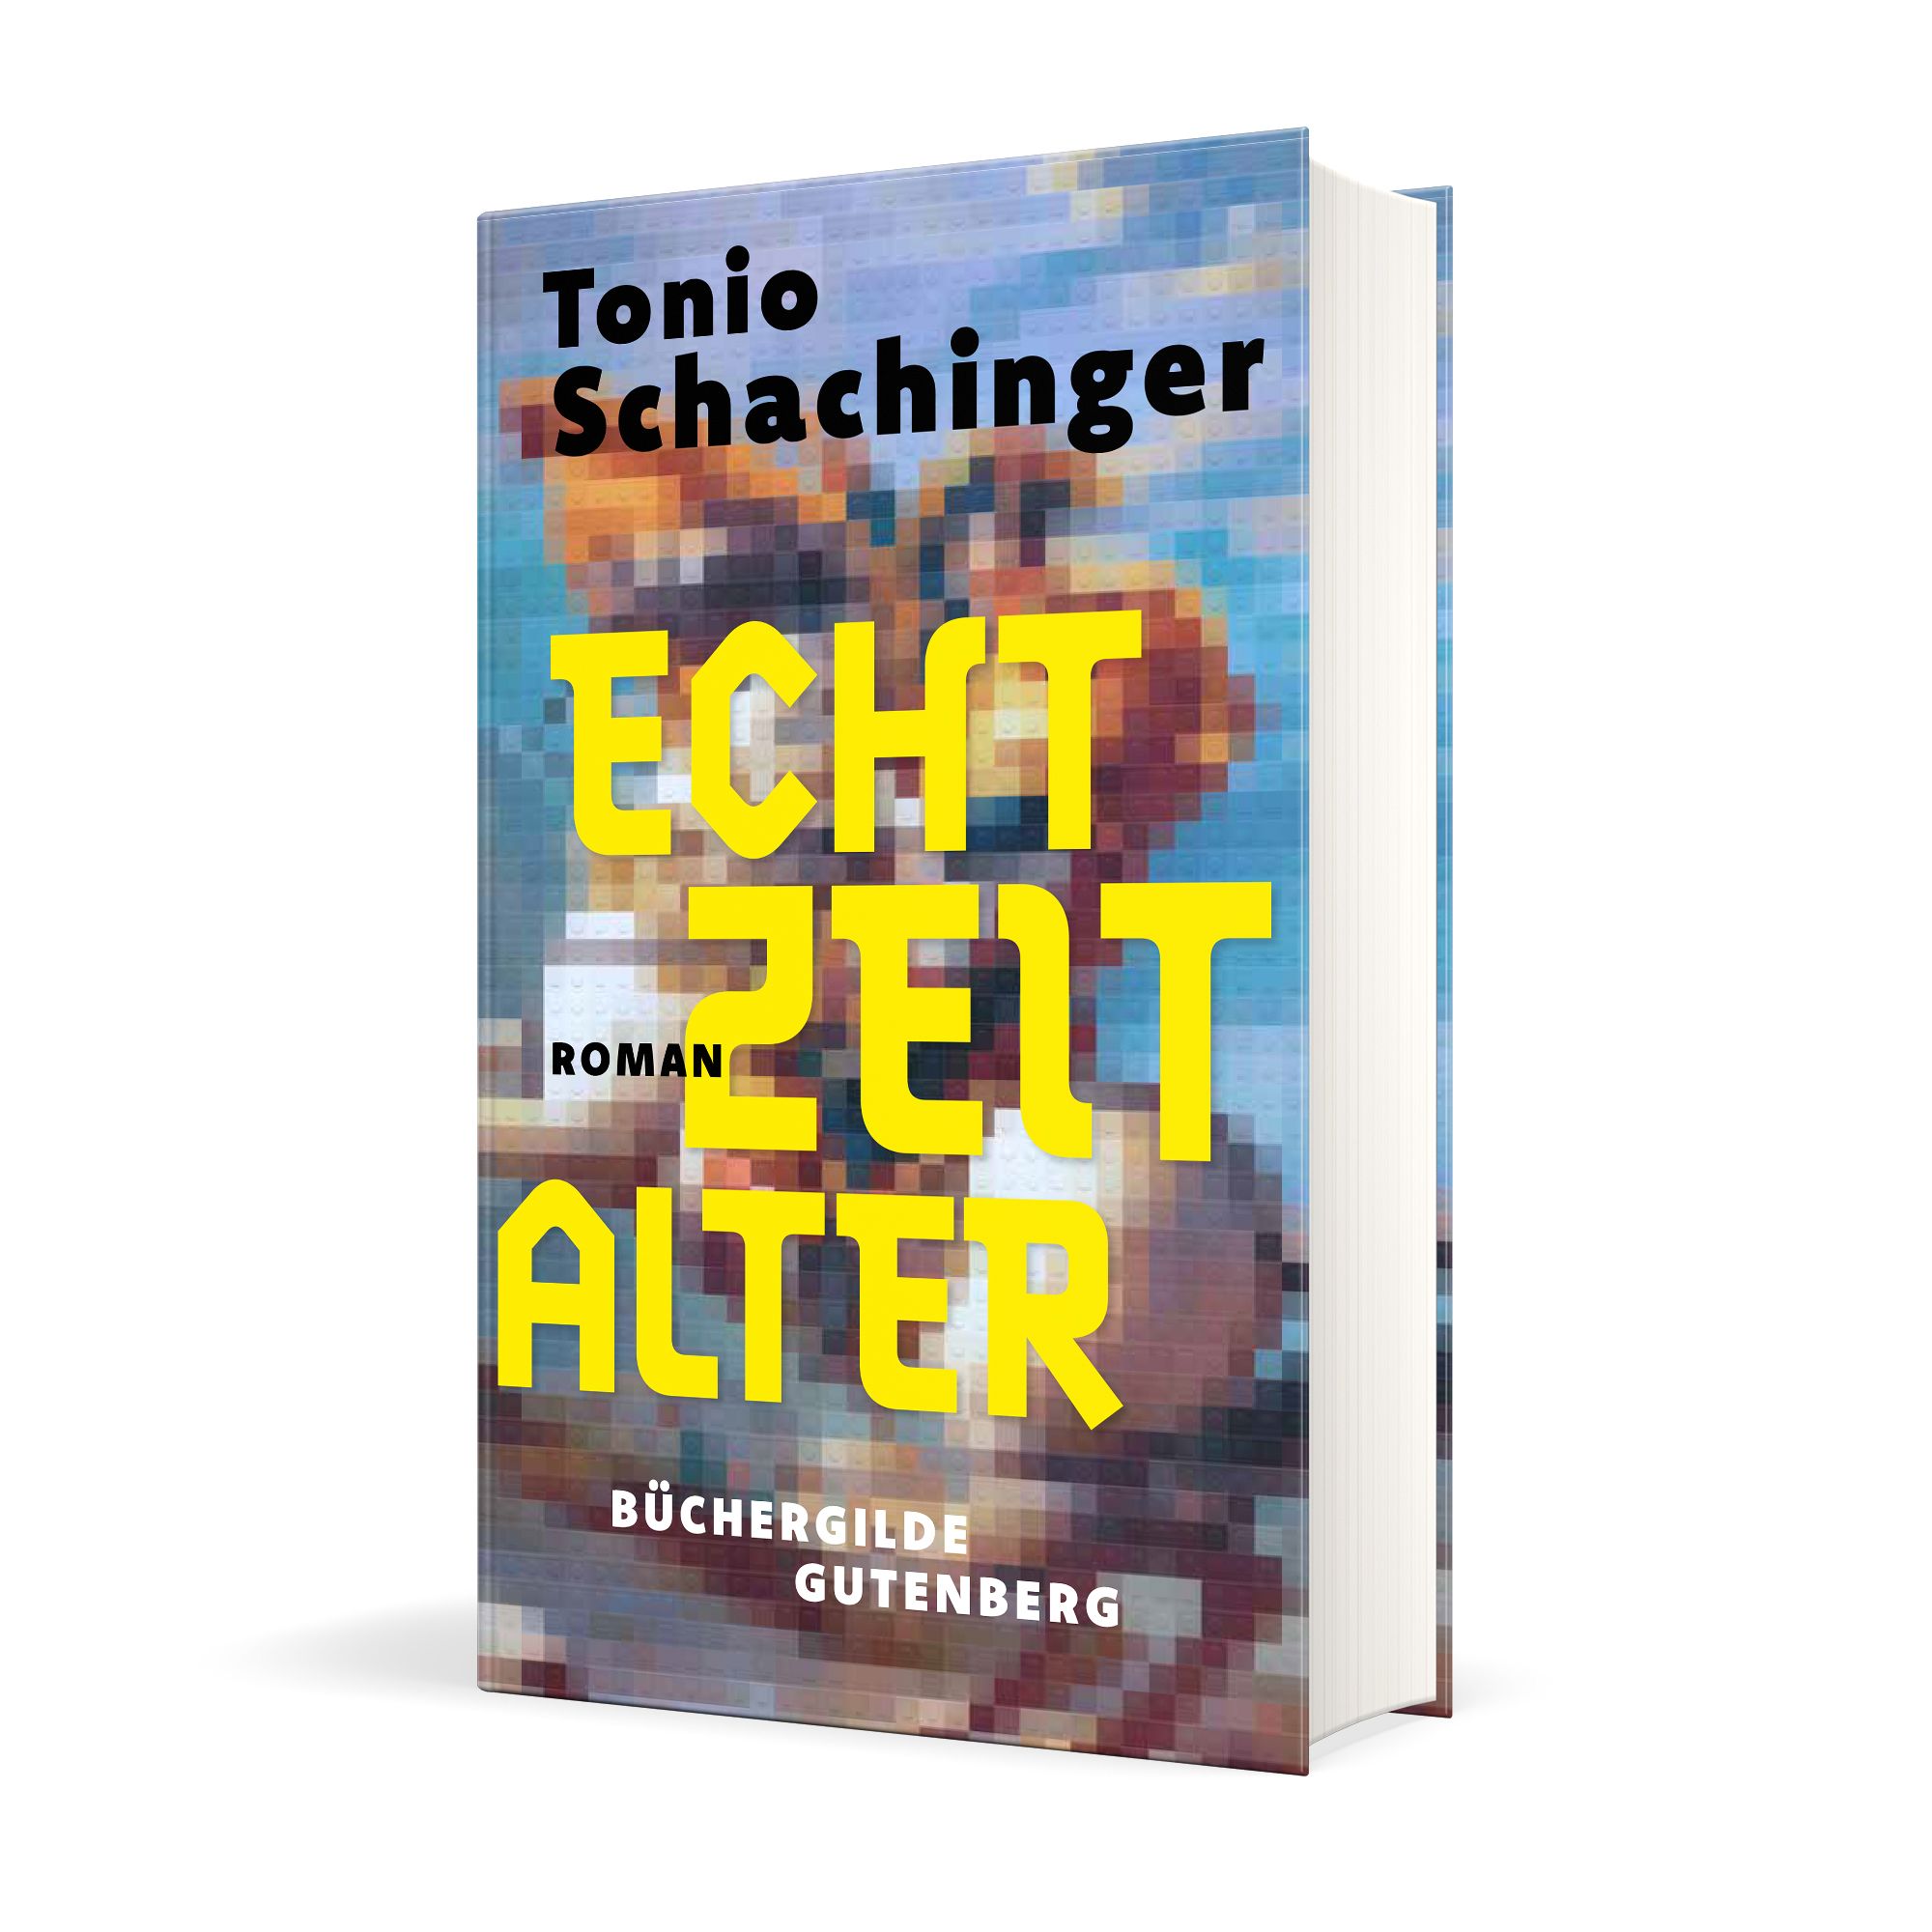 175193_Schachinger_Echtzeitalter_3D_01.jpg